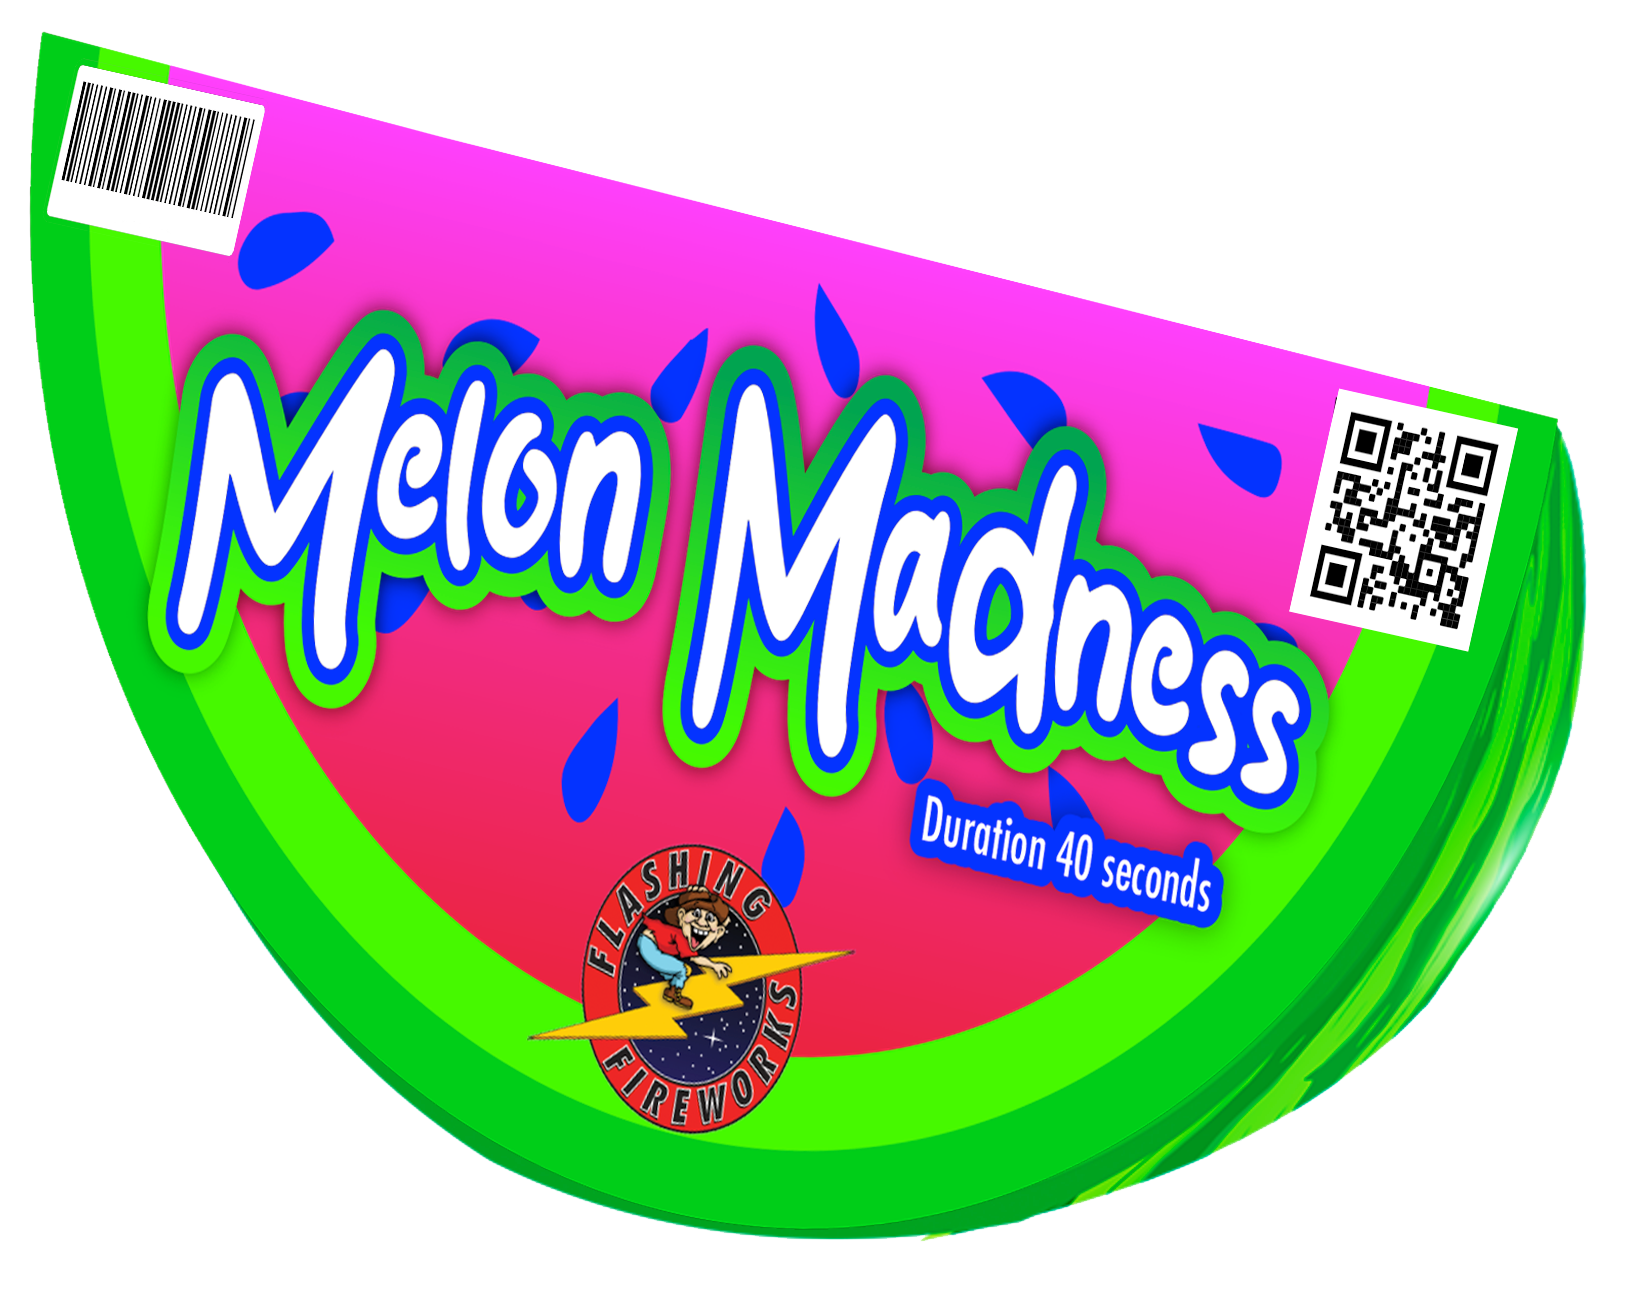 Melon Madness Fountain